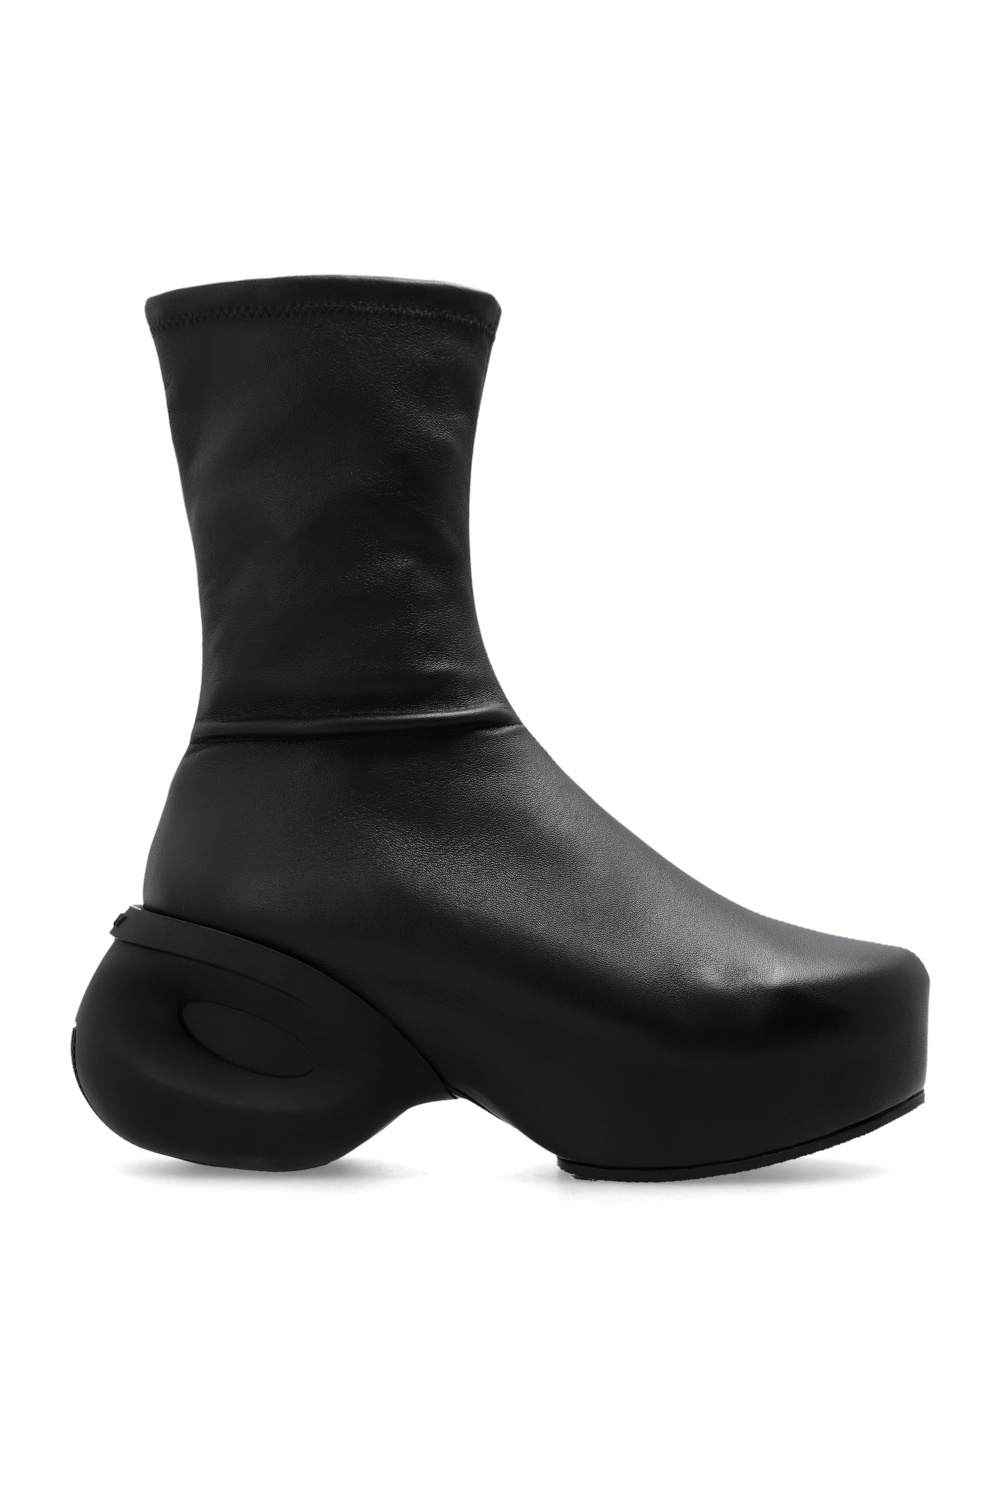 givenchy bag ‘G Clog’ platform ankle boots